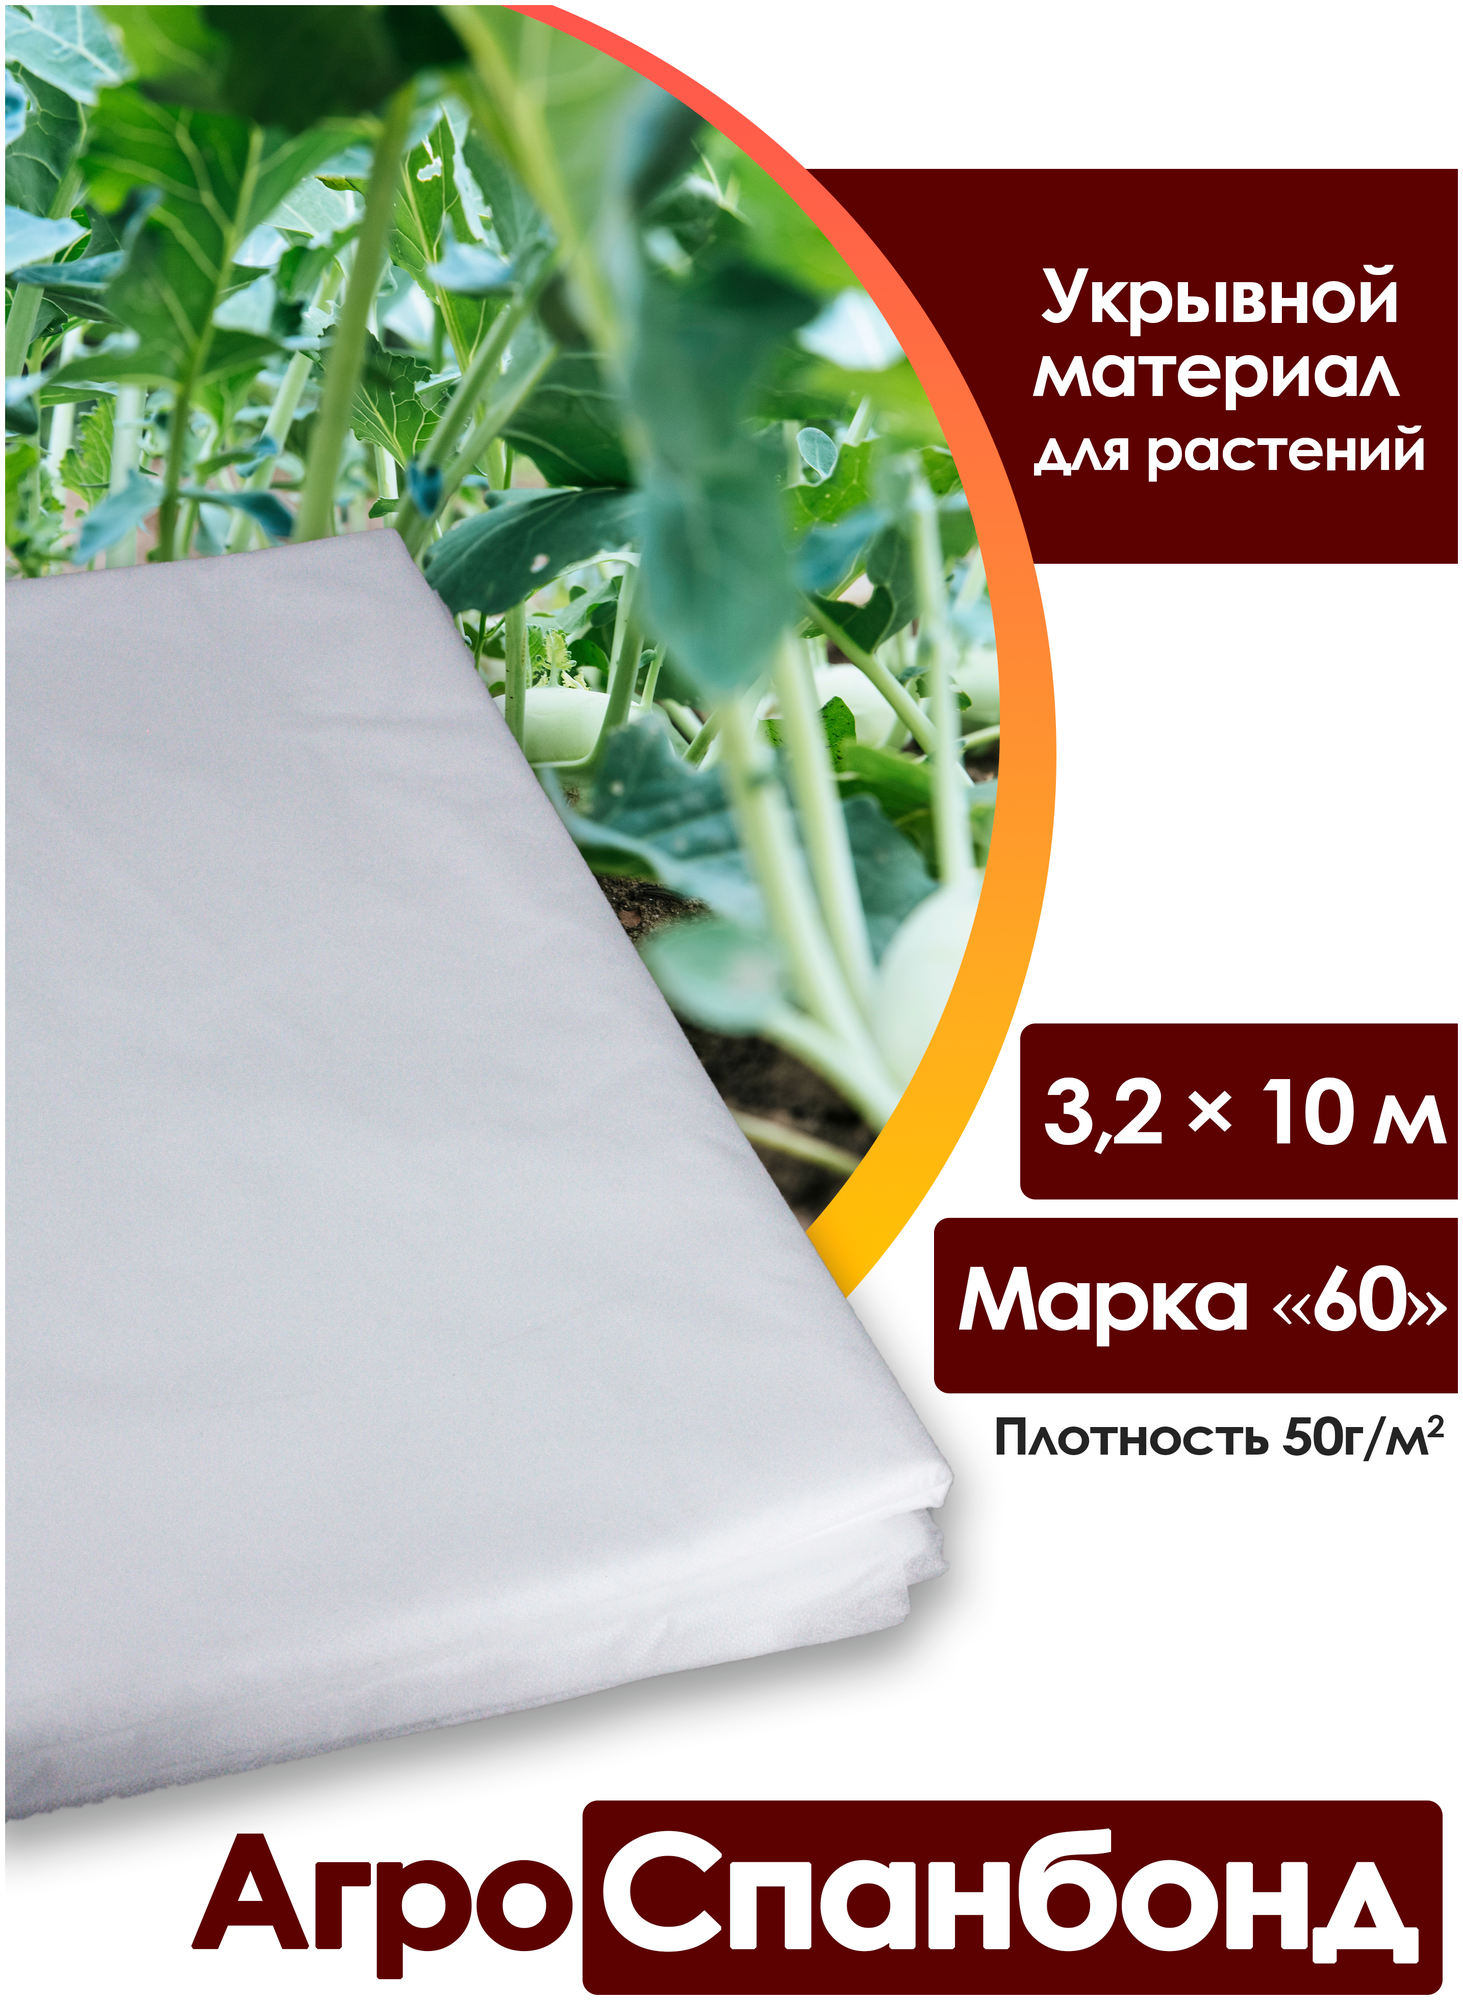 Body Pillow Спанбонд укрывной 3,2х10 м плотностью 50 г/м2, Марка "60" / Агротекстиль для теплиц, растений / Нетканый укрывной материал